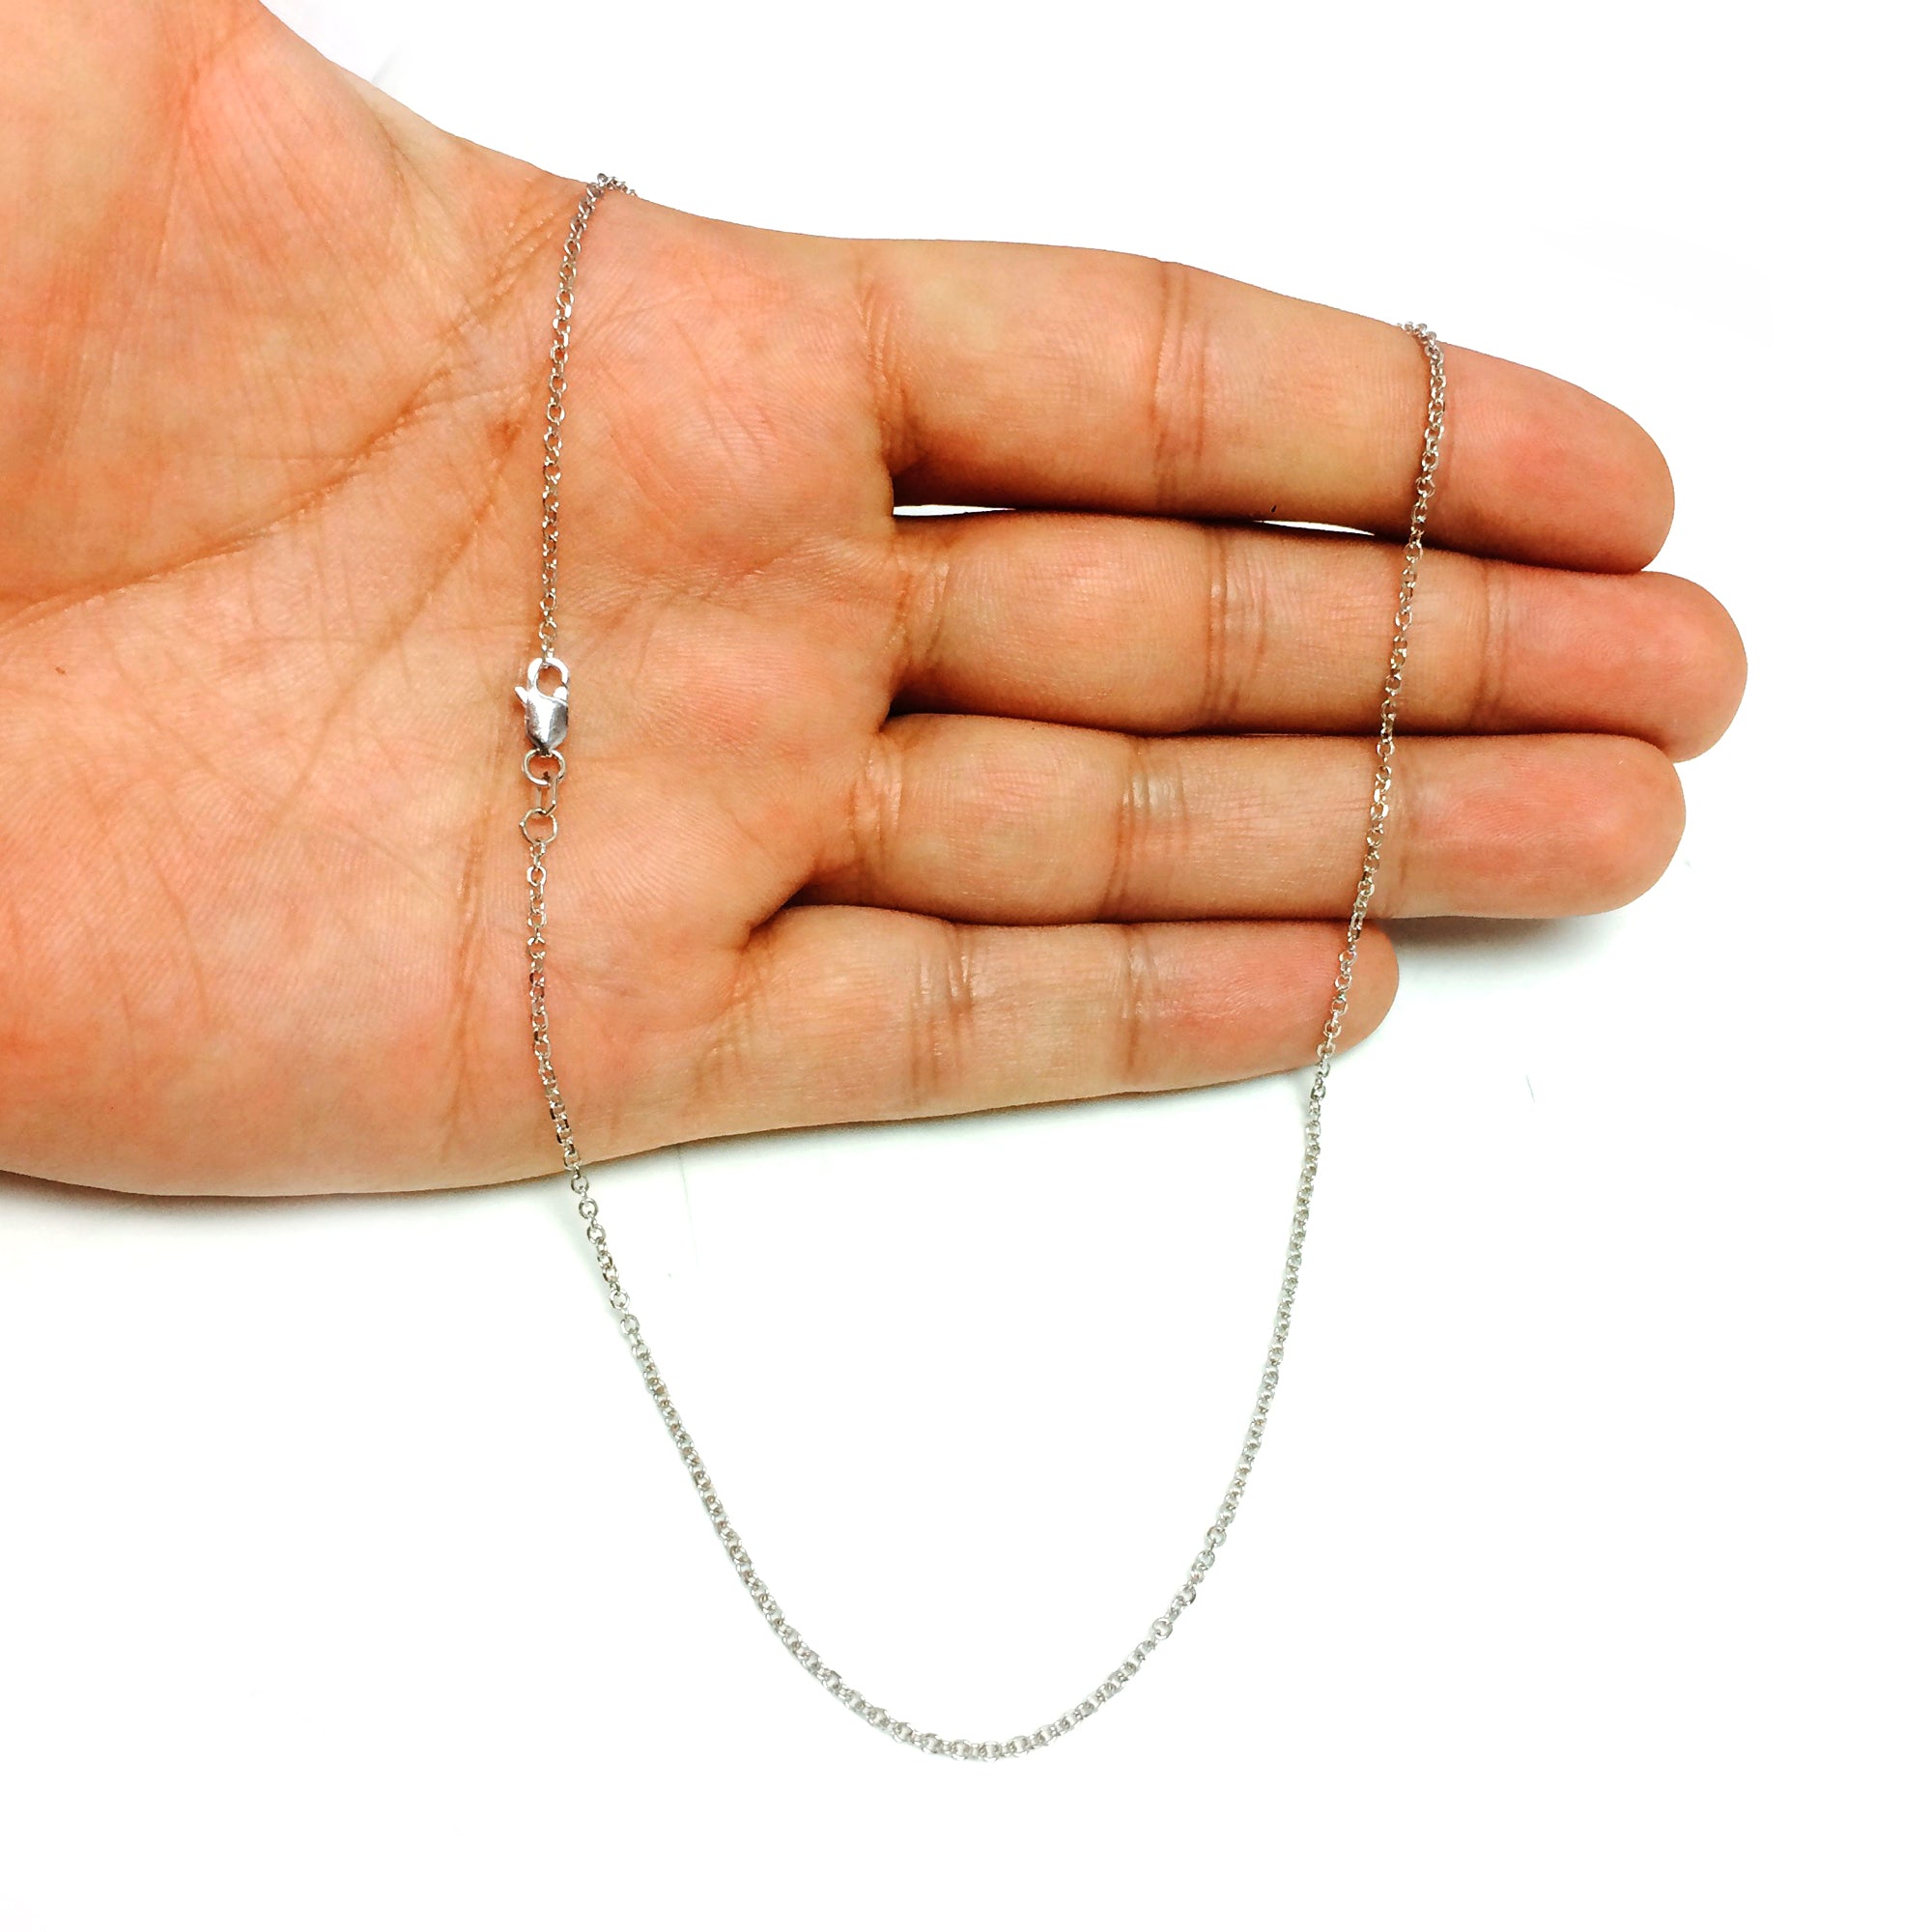 Collar de cadena con eslabones tipo cable de oro blanco de 14 k, joyería fina de diseño de 1,4 mm para hombres y mujeres